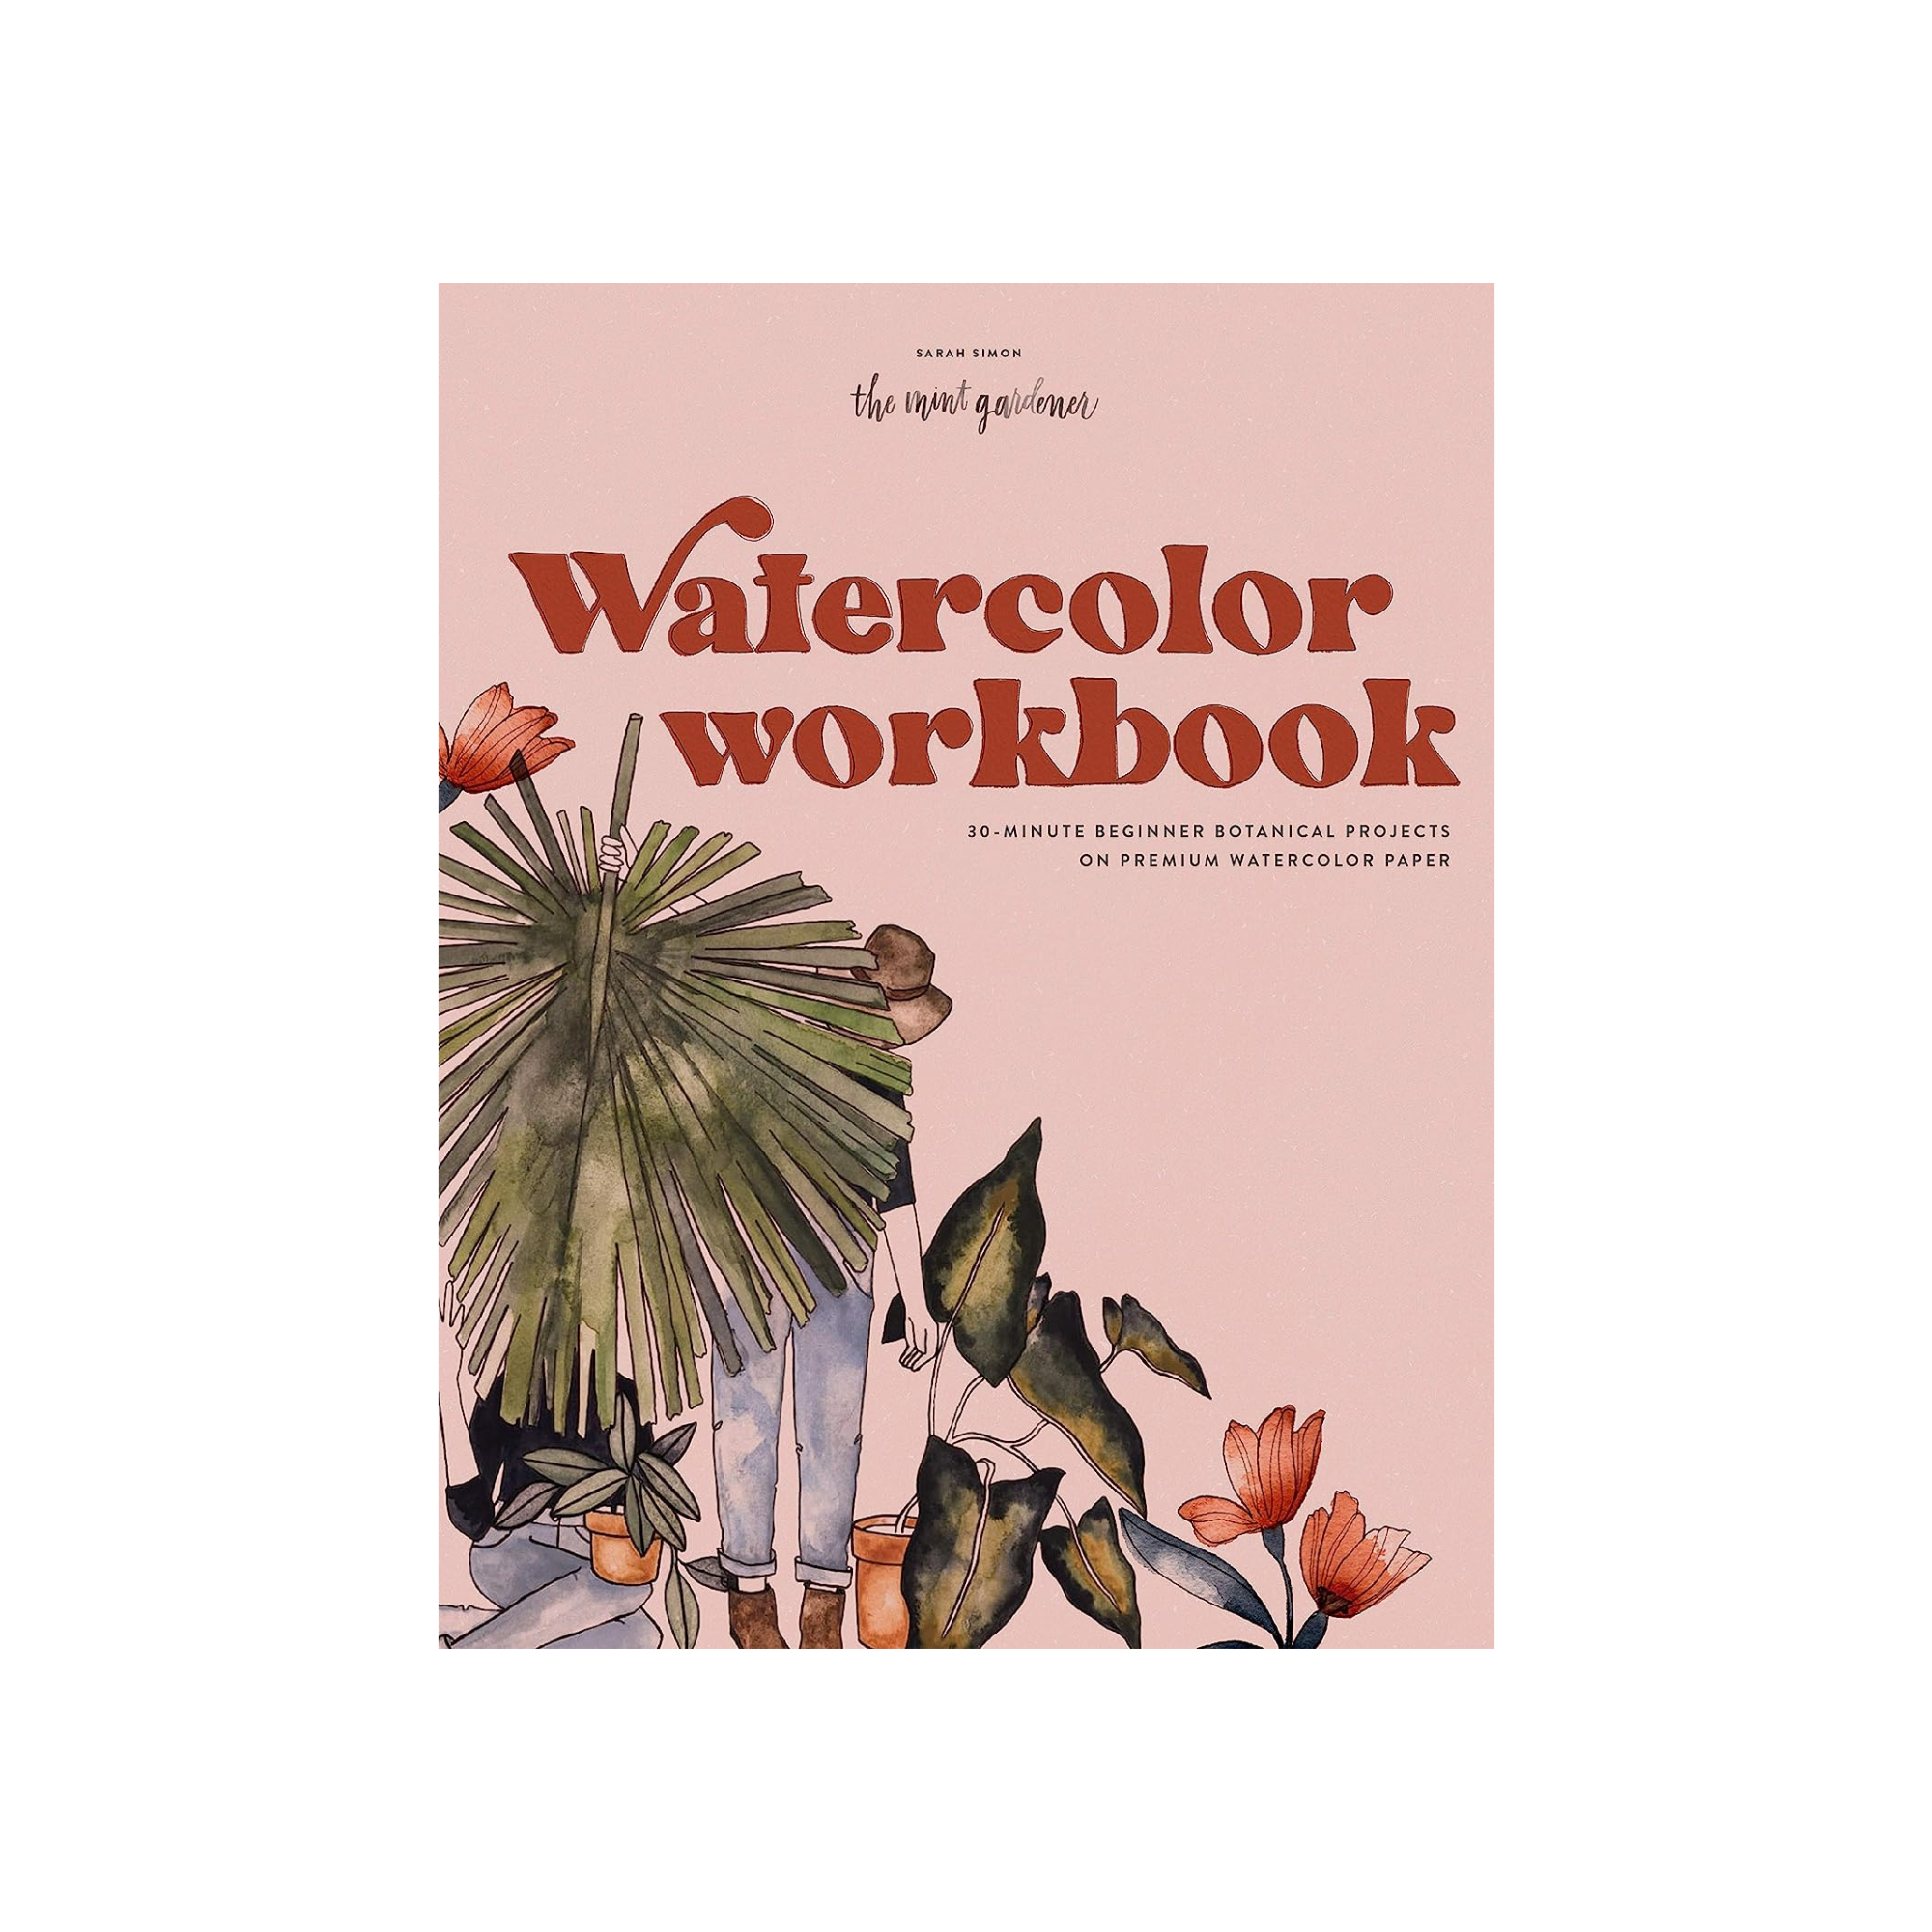  Watercolor Workbook: 30-Minute Beginner Botanical